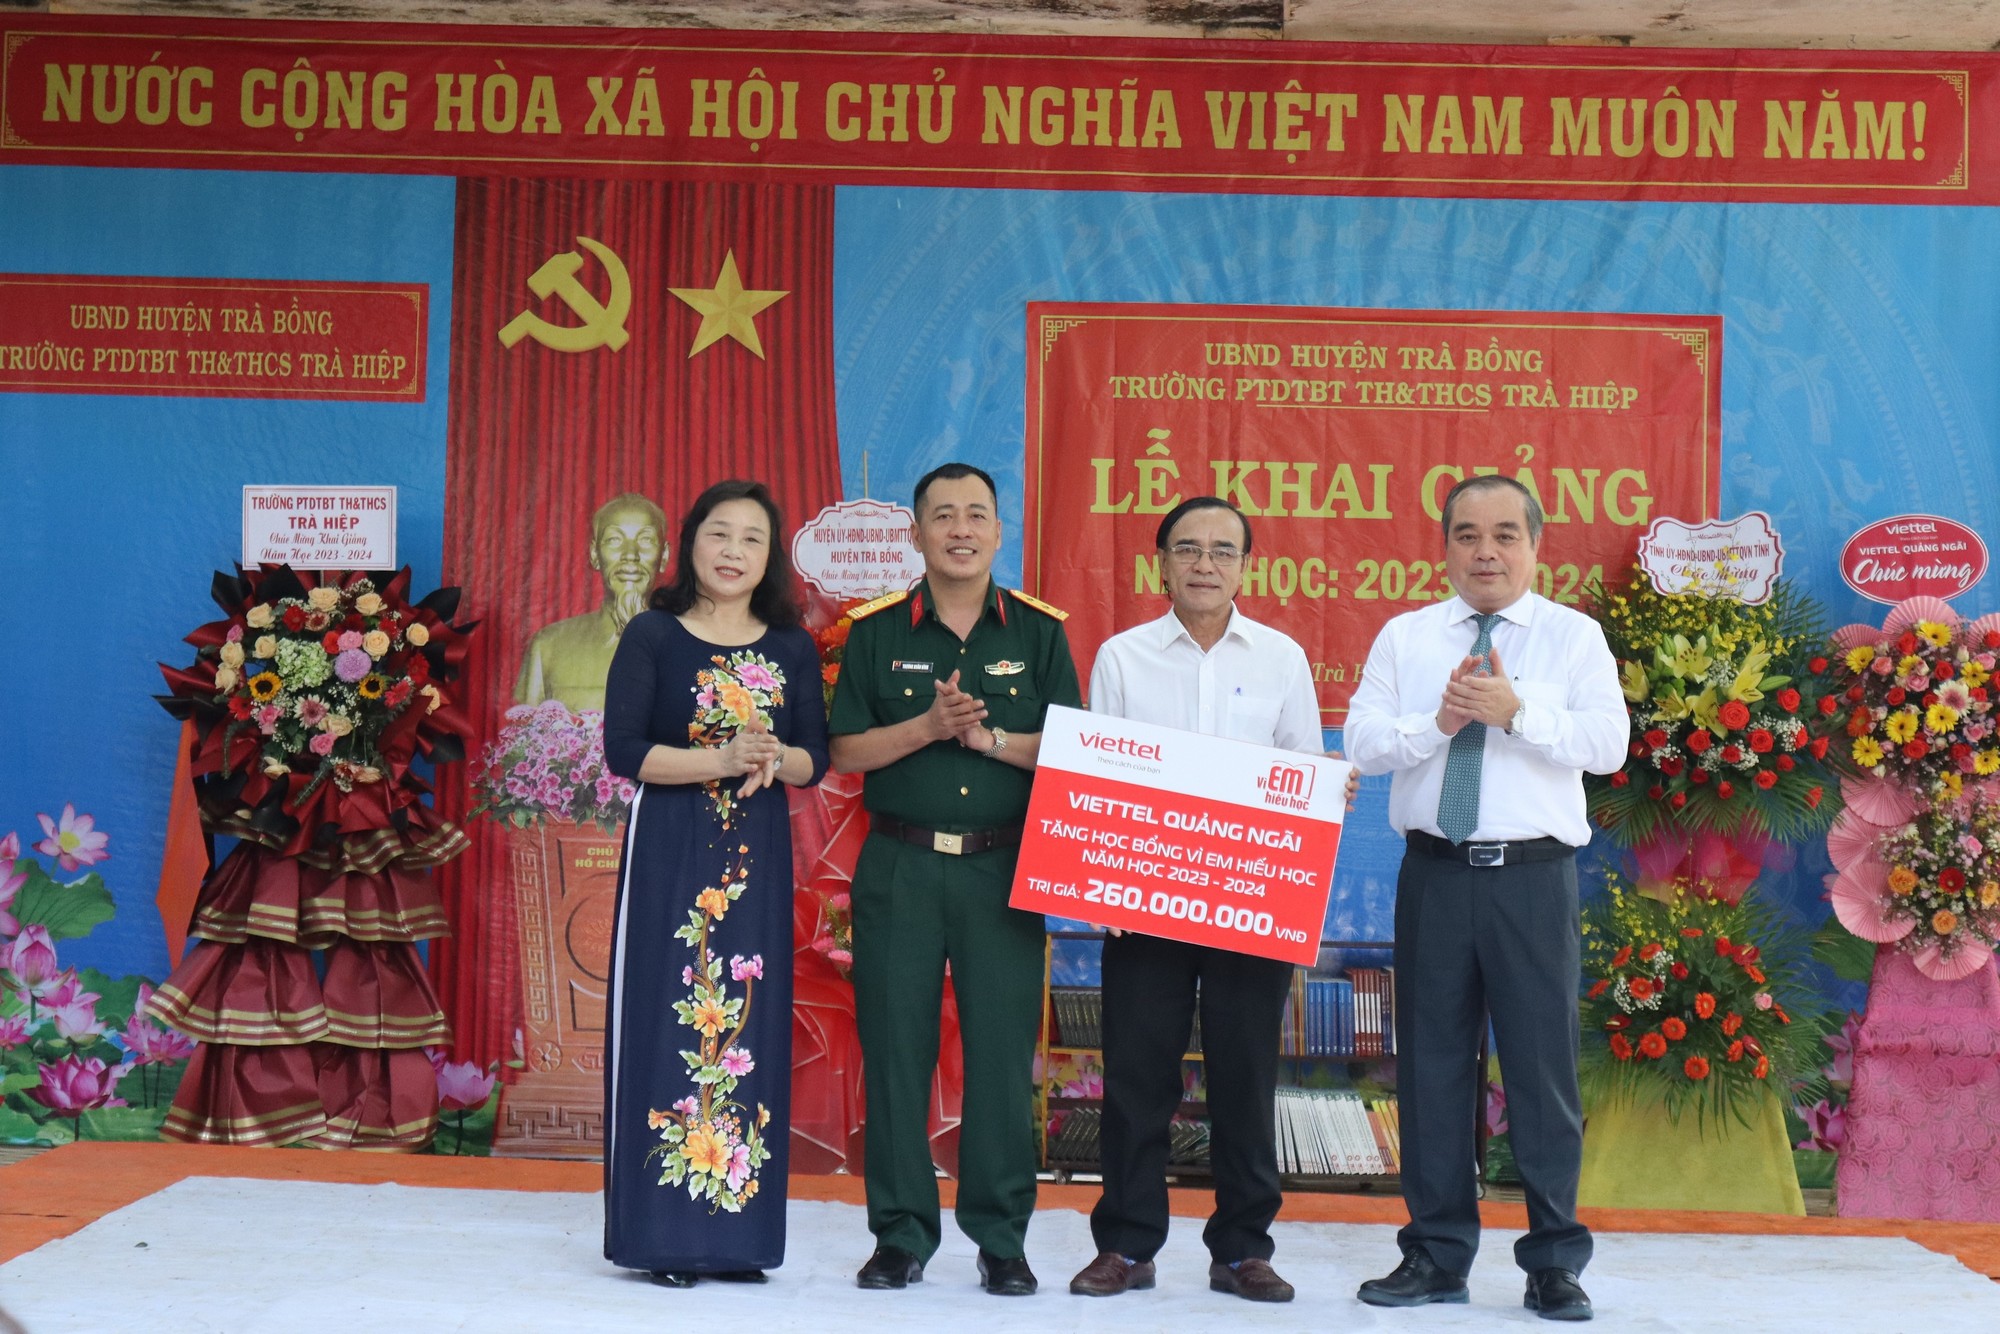 Phó chủ tịch UBND tỉnh Trần Hoàng Tuấn dự lễ khai giảng năm học mới tại Trường PTDTBT Tiểu học và THCS Trà Hiệp